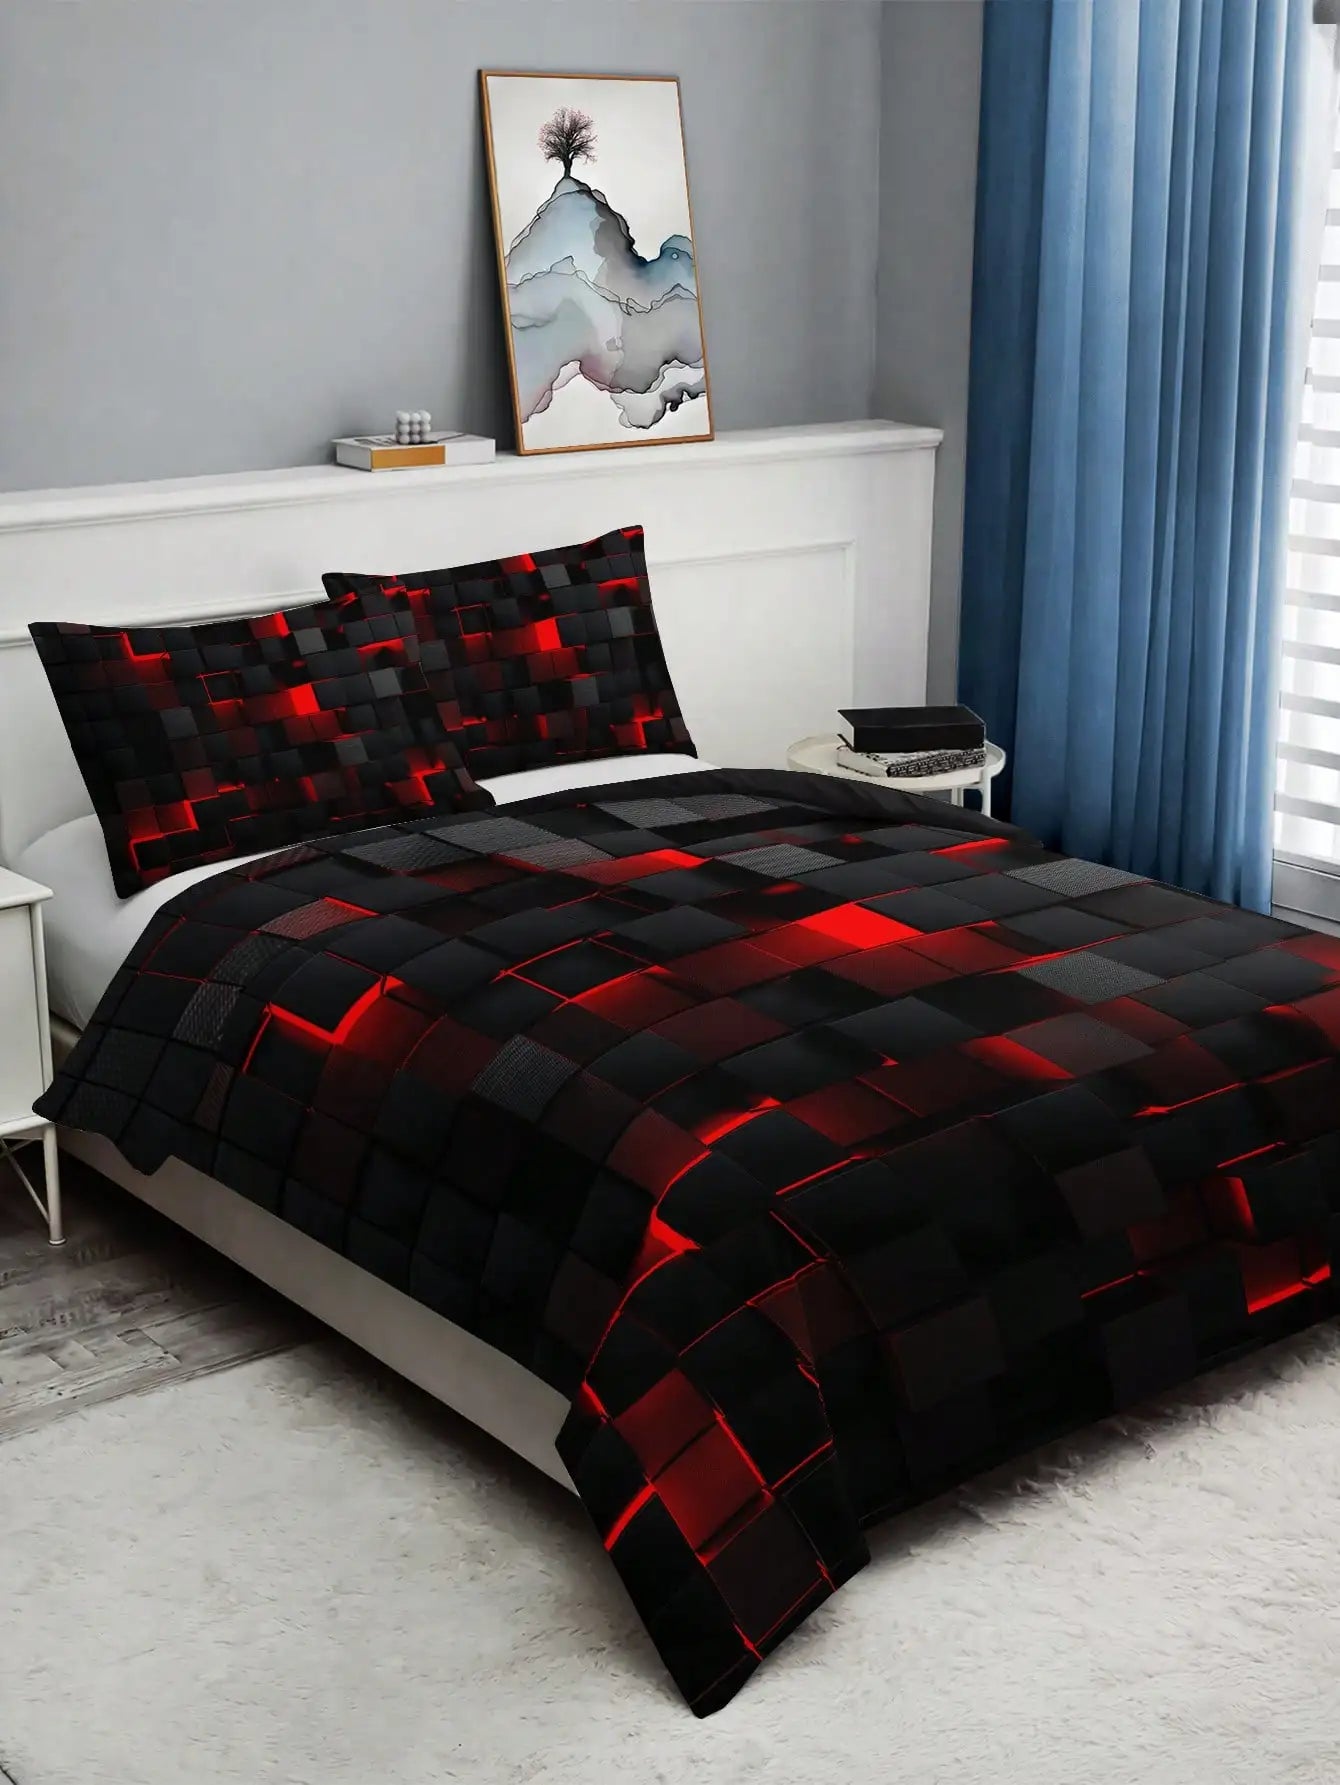 Stili i mbulesës së ngushëllimit të rrjetit të kuq të stilit të teknologjisë, përfshirë 1 mbulesë ngushëlluese dhe 2 jastëkësha të përshtatshme për përdorim në shtëpi dhe konvikt